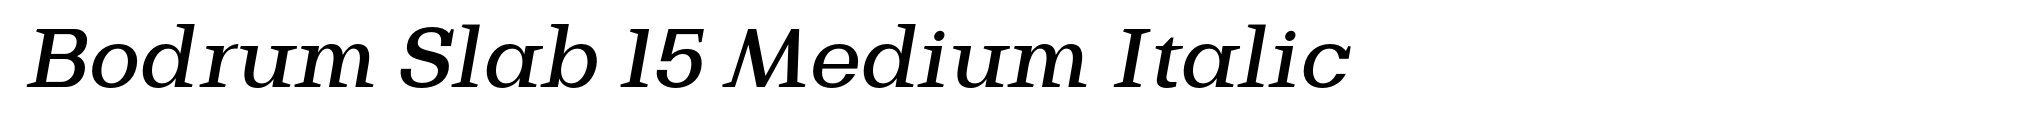 Bodrum Slab 15 Medium Italic image